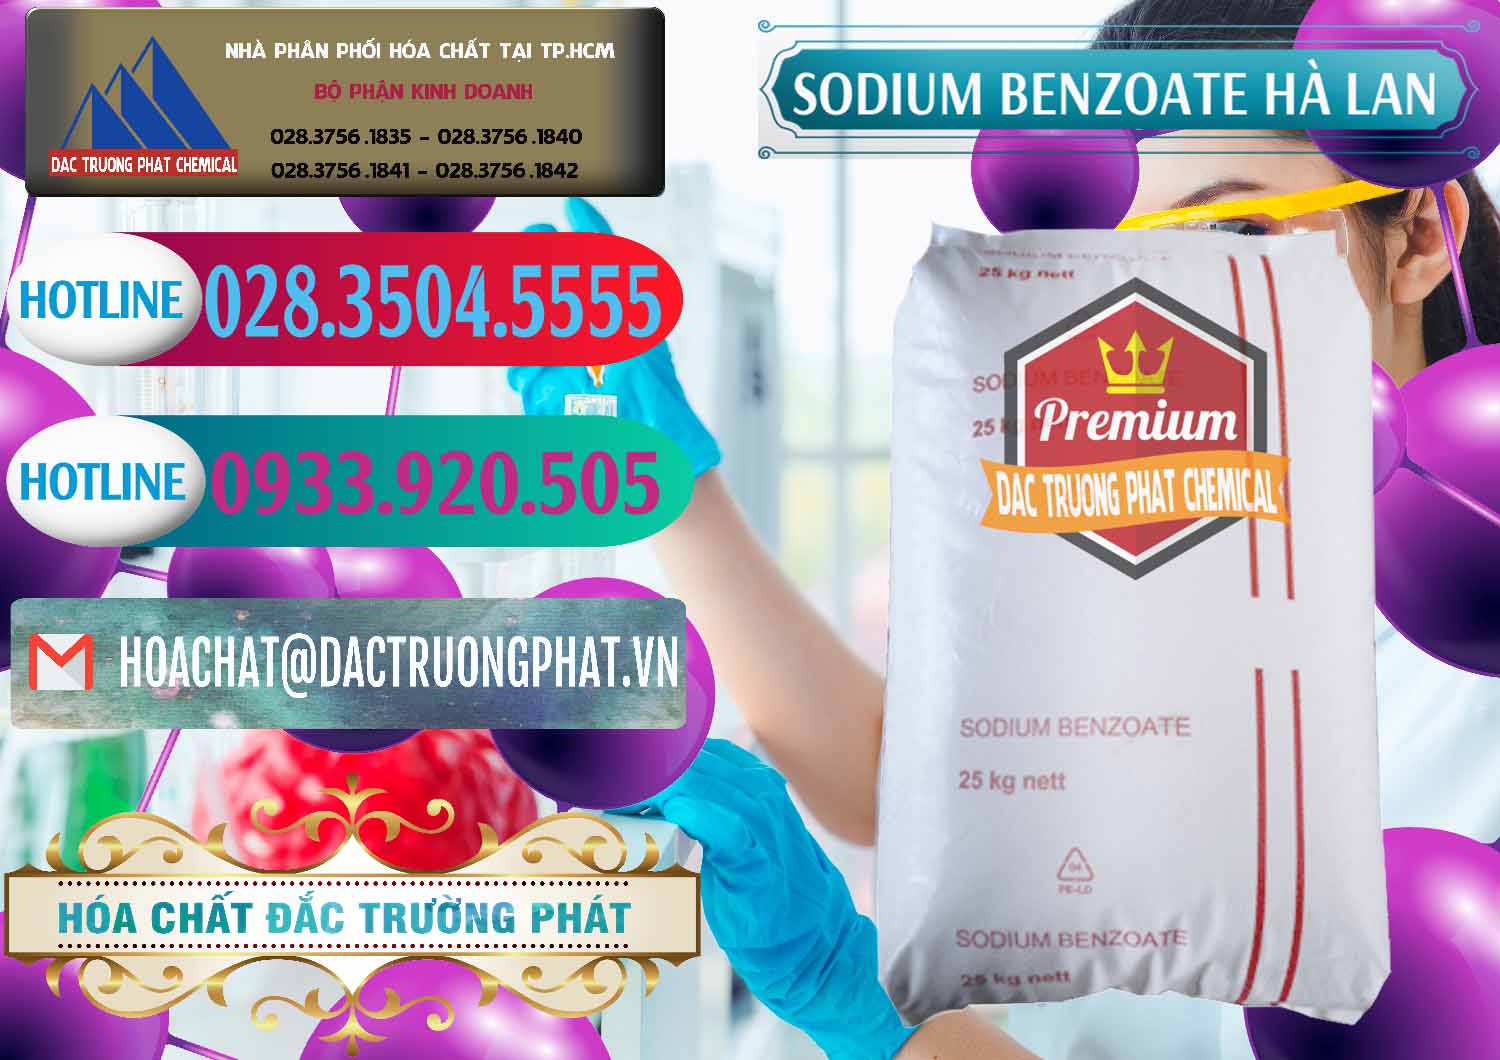 Đơn vị phân phối & bán Sodium Benzoate - Mốc Bột Chữ Cam Hà Lan Netherlands - 0360 - Đơn vị chuyên bán ( phân phối ) hóa chất tại TP.HCM - truongphat.vn